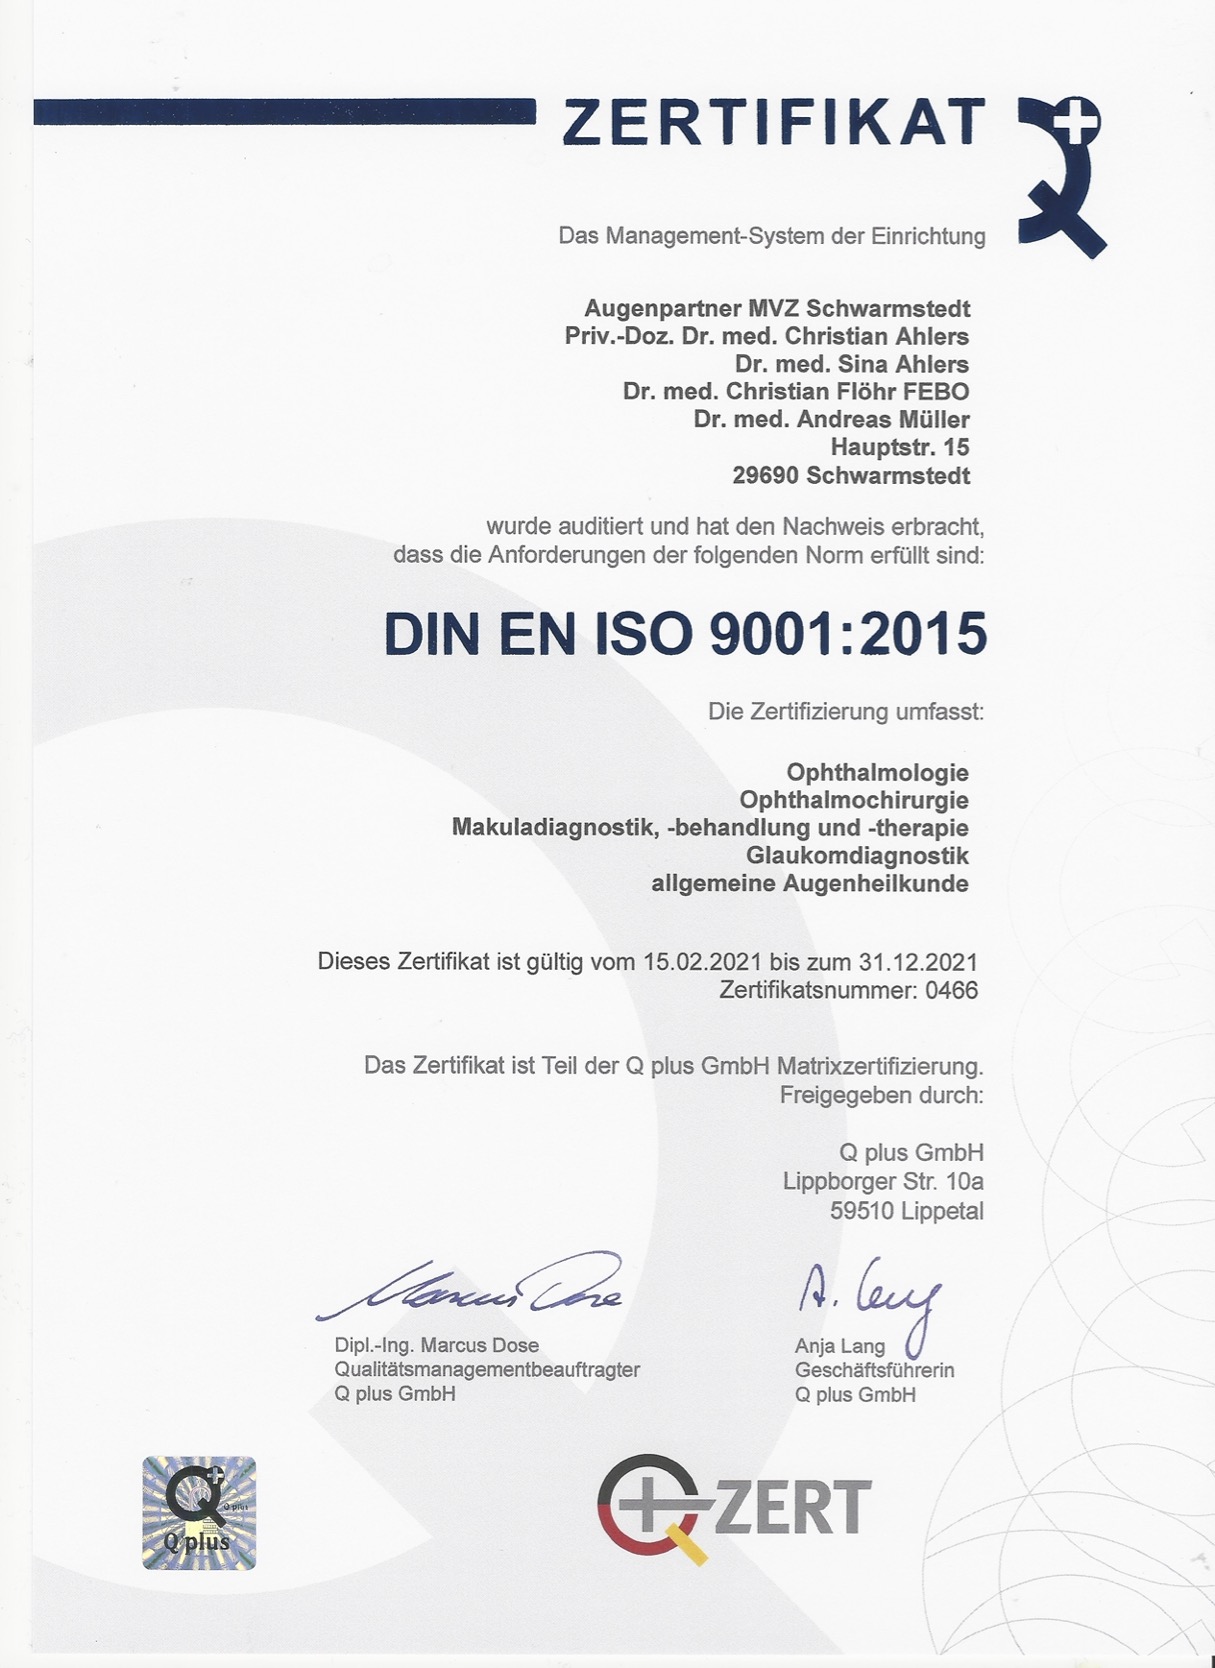 Zertifikat der Augenpartner Schwarmstedt über DIN ISO 9001